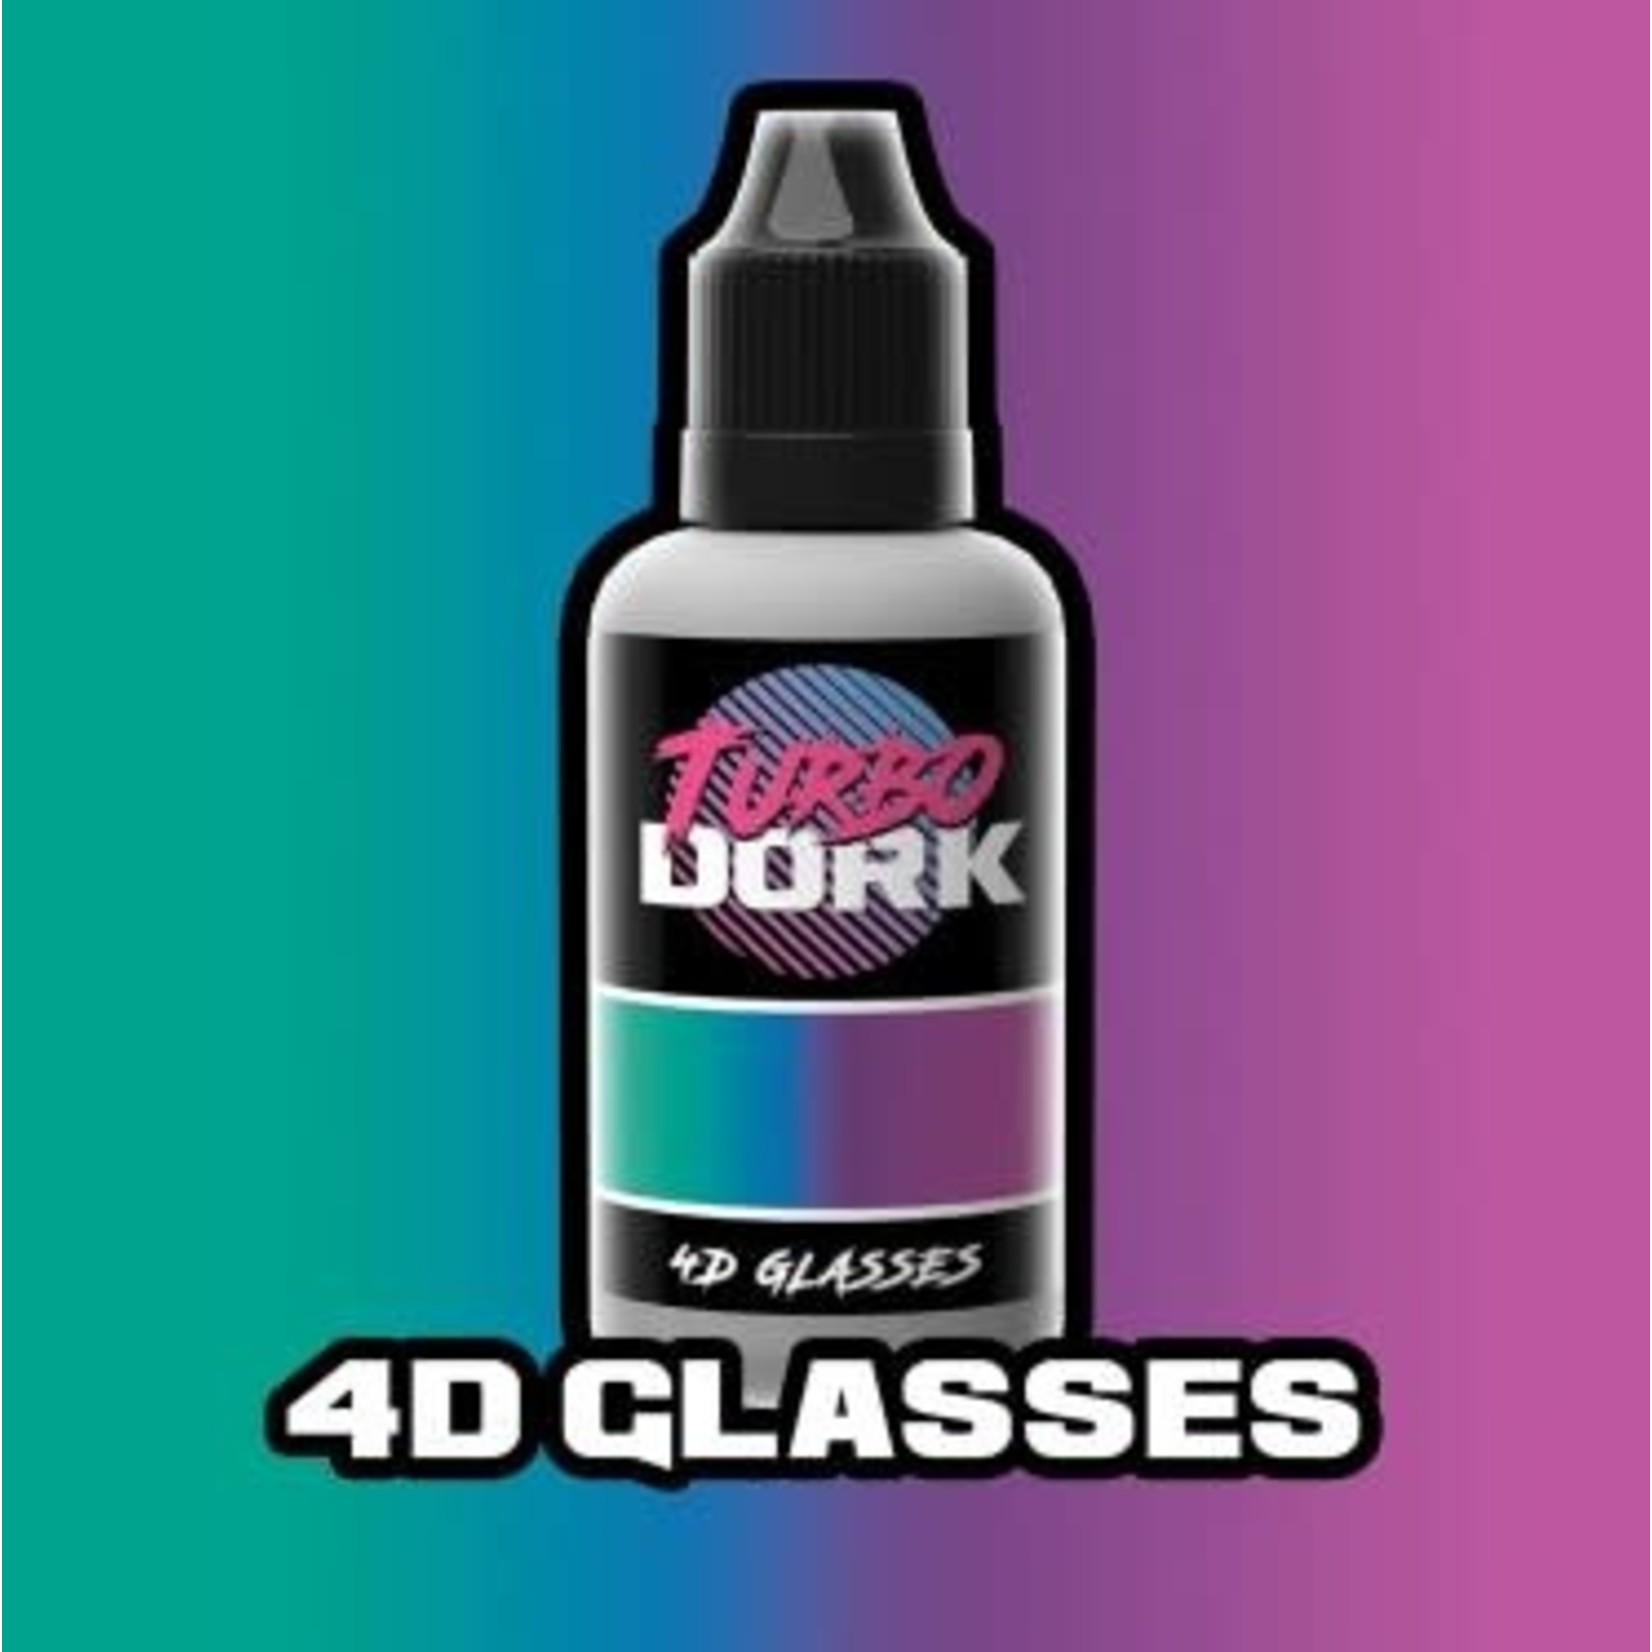 Turbo Dork 4D Glasses Turboshift Acrylic Paint